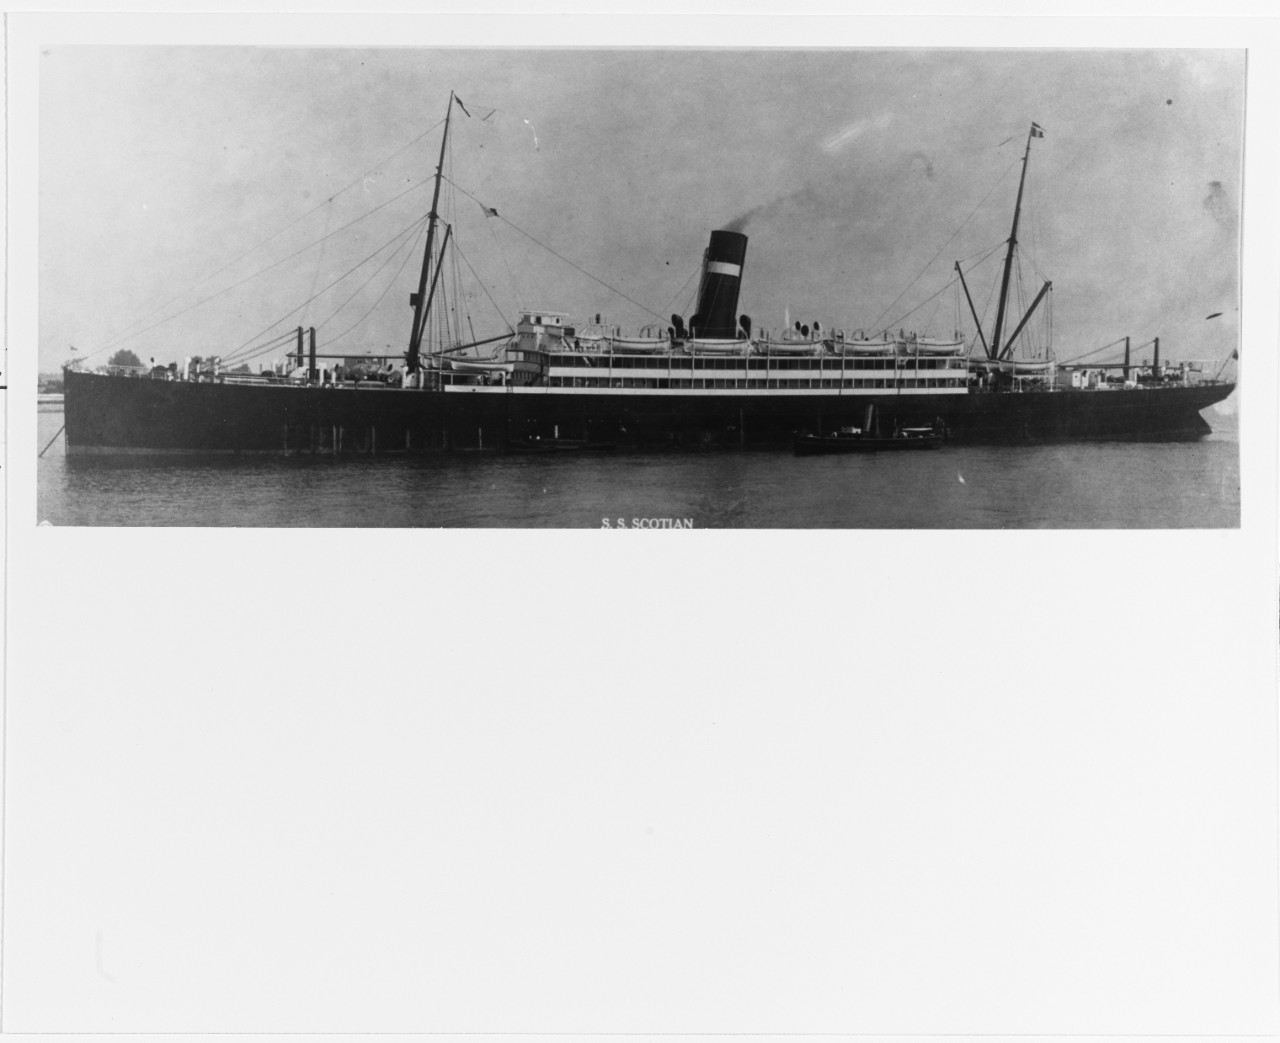 S.S. SCOTIAN (British passenger ship, 1898-1927)